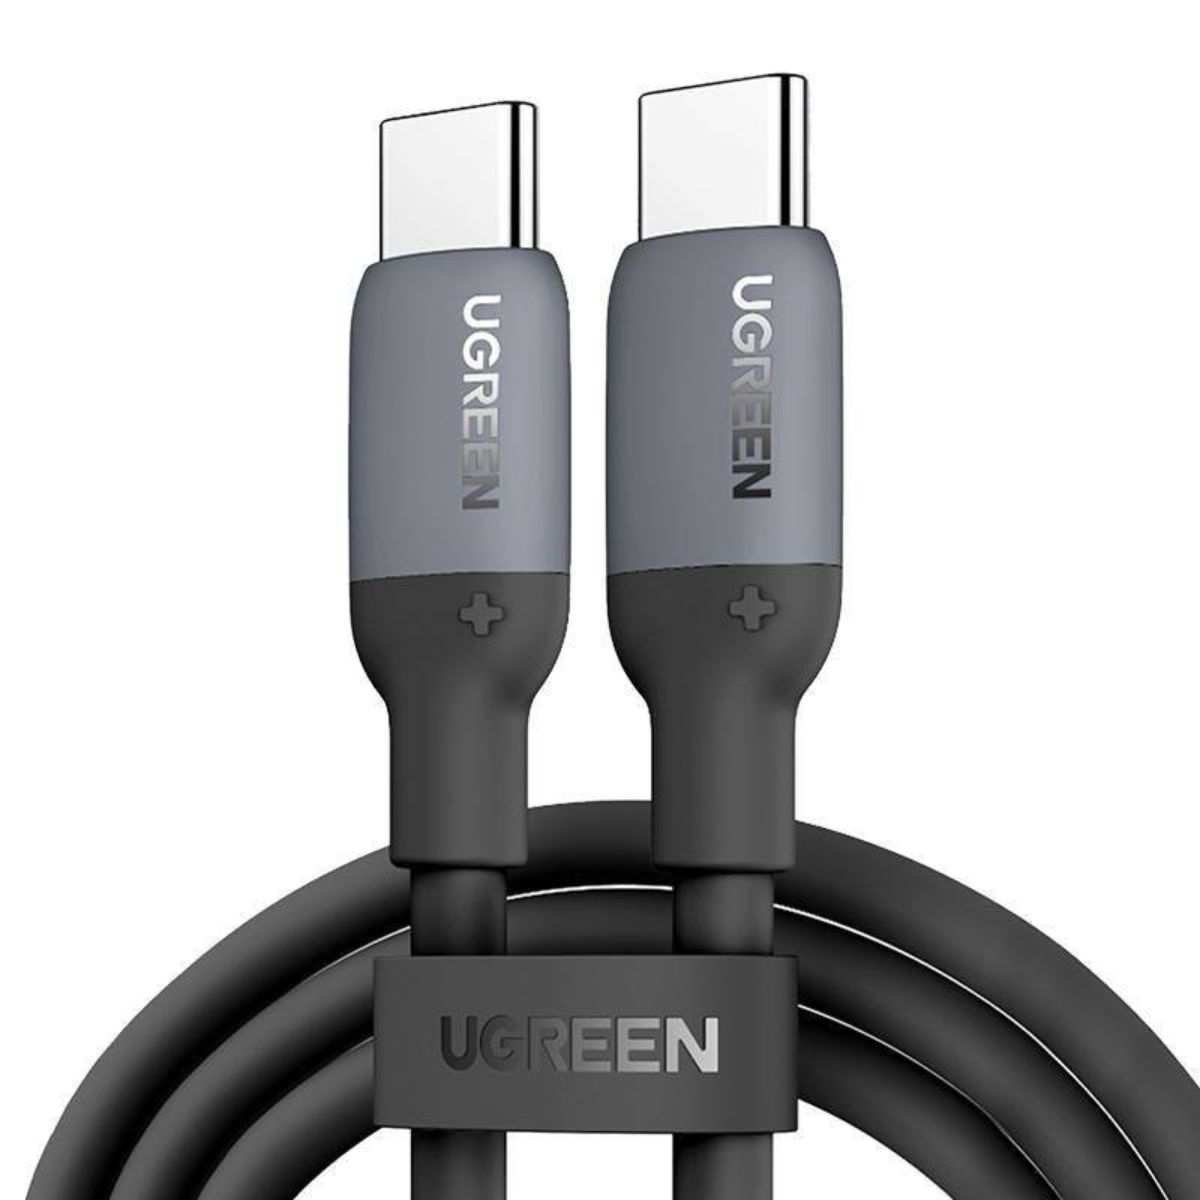 Cáp sạc dài 50cm silicone USB-C đến USB-C Ugreen 15282 US563 màu đen, hỗ trợ sạc nhanh, tốc độ truyền dữ liệu 480Mbps